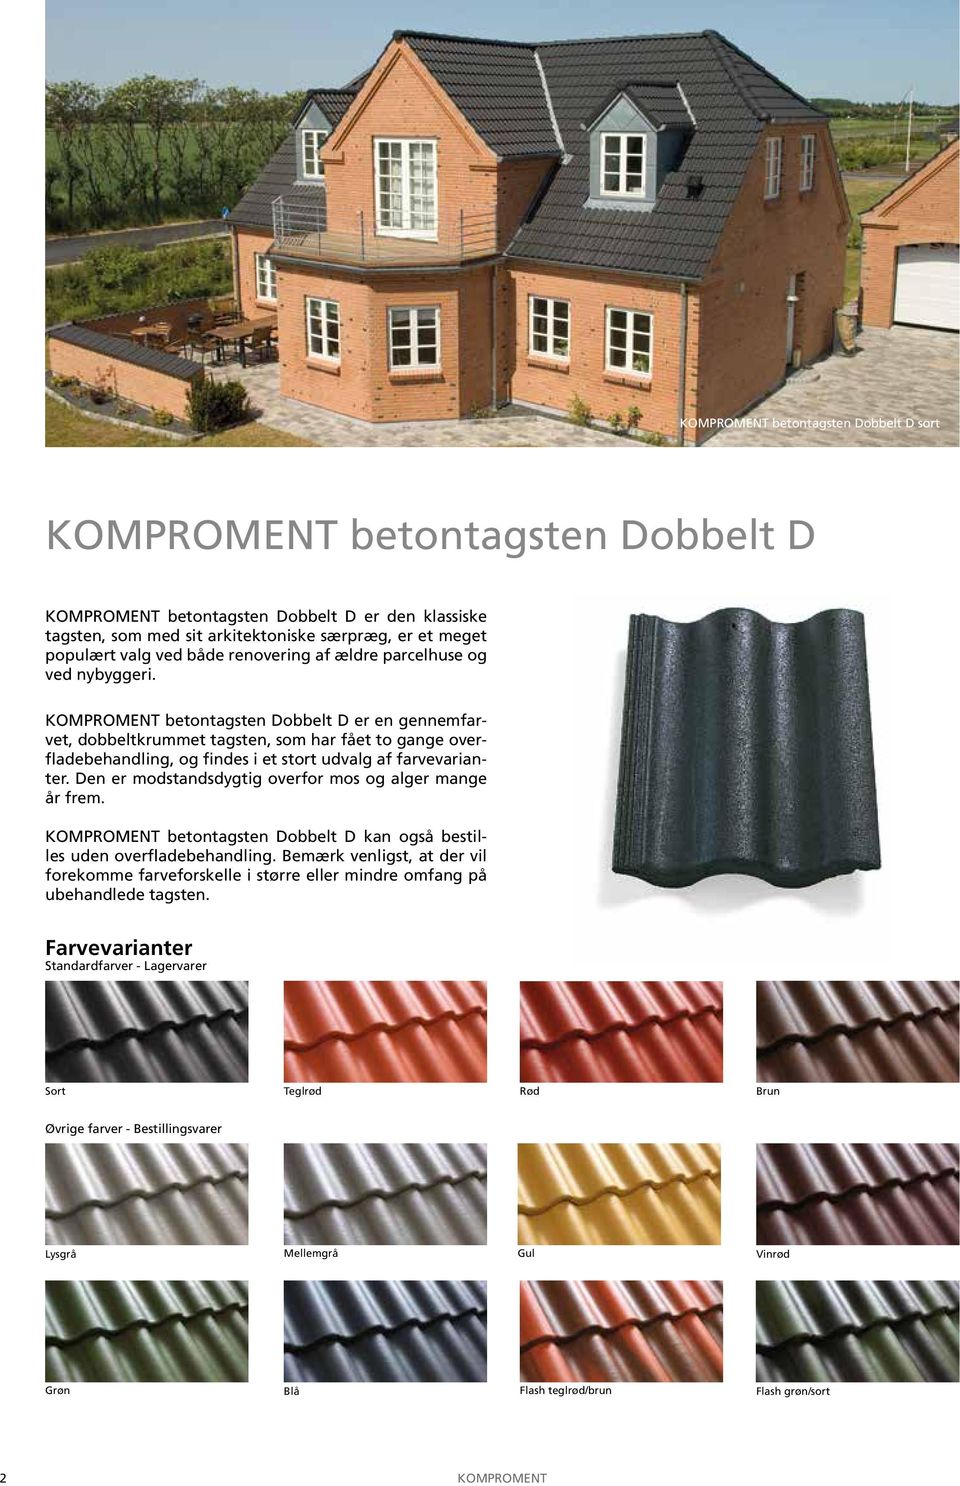 KOMPROMENT betontagsten Dobbelt D er en gennemfarvet, dobbeltkrummet tagsten, som har fået to gange overfladebehandling, og findes i et stort udvalg af farvevarianter.